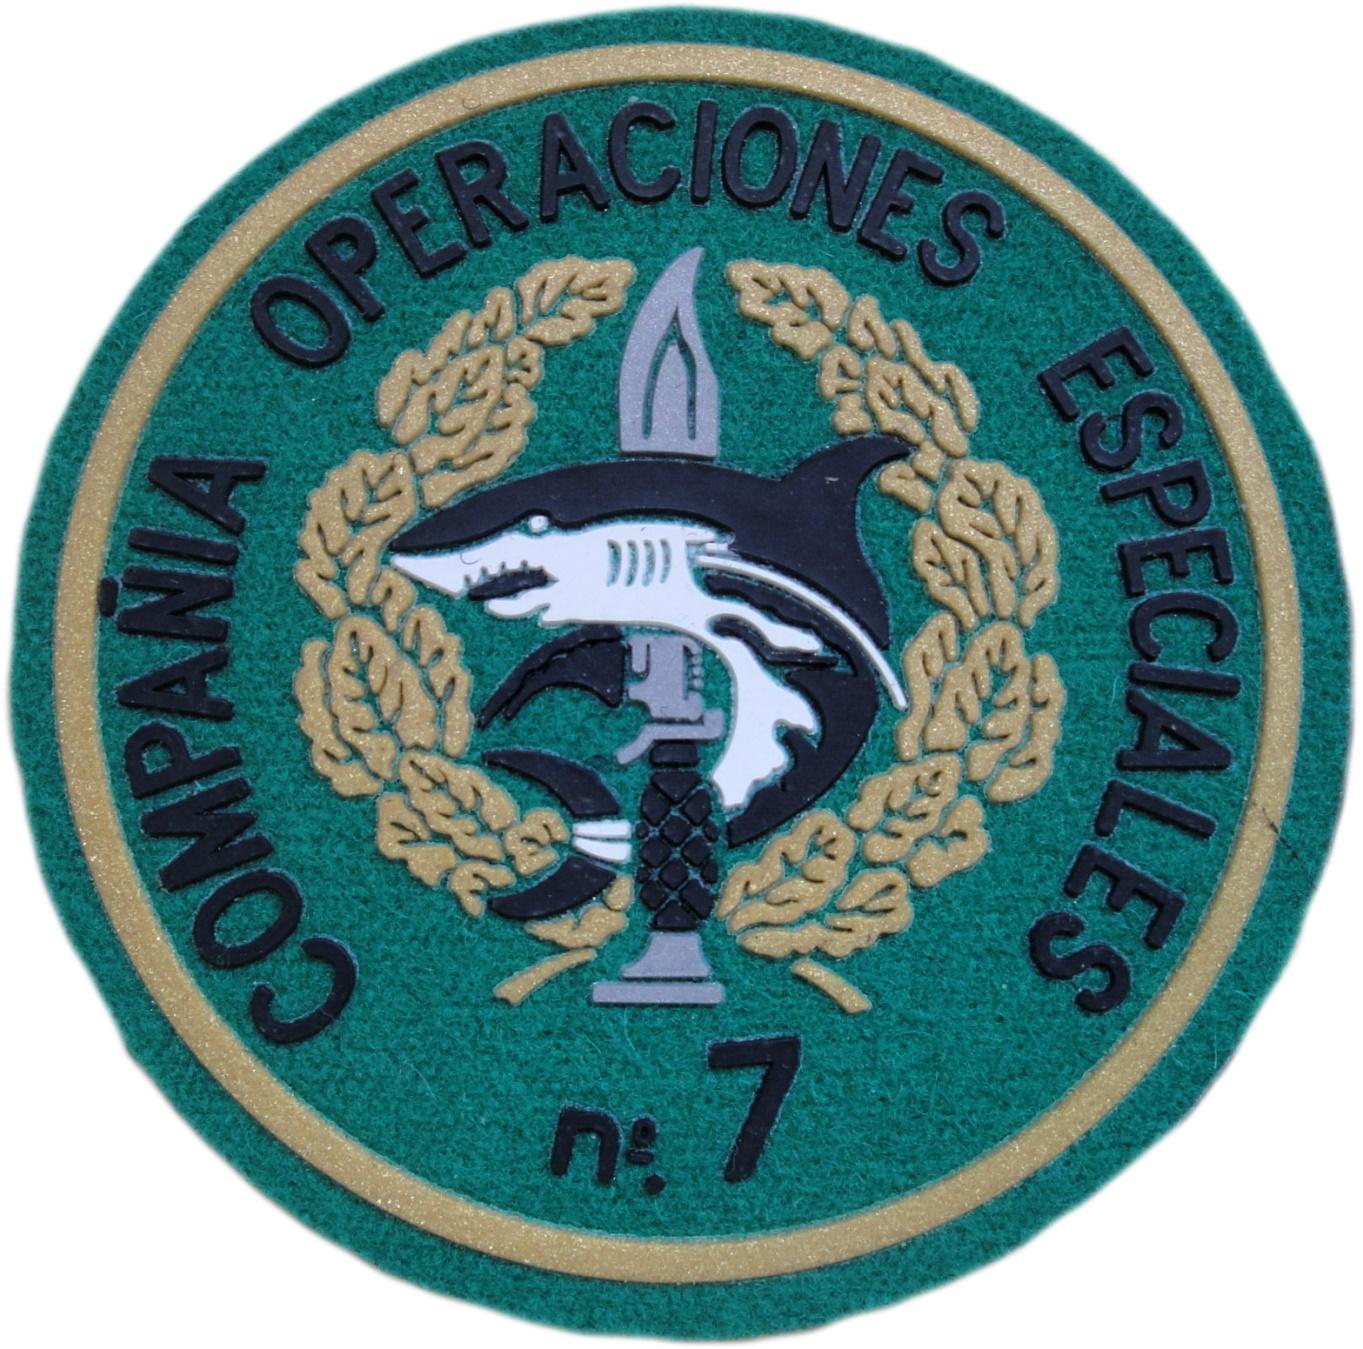 Ejército de Tierra Compañía de Operaciones Especiales 7 parche insignia emblema distintivo dorado